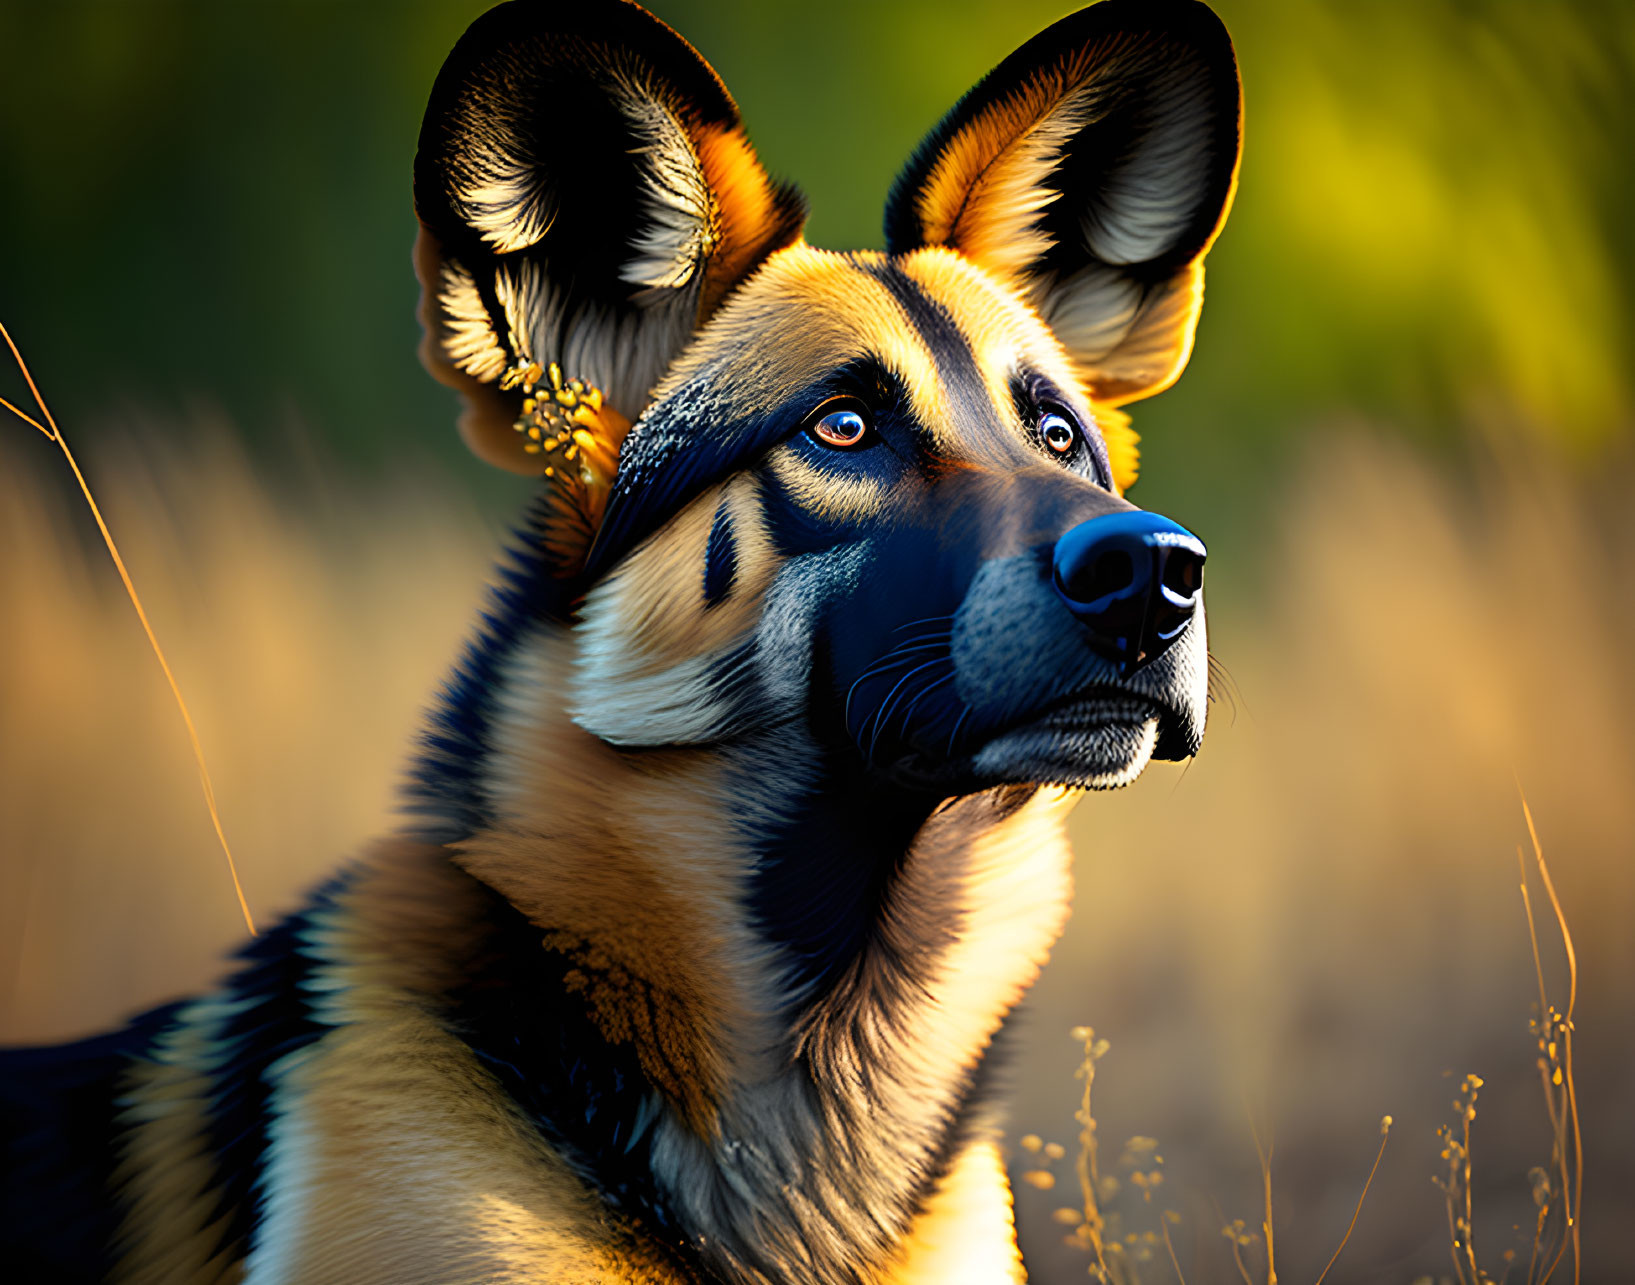 German Shepherd dog with alert eyes in golden-hour light